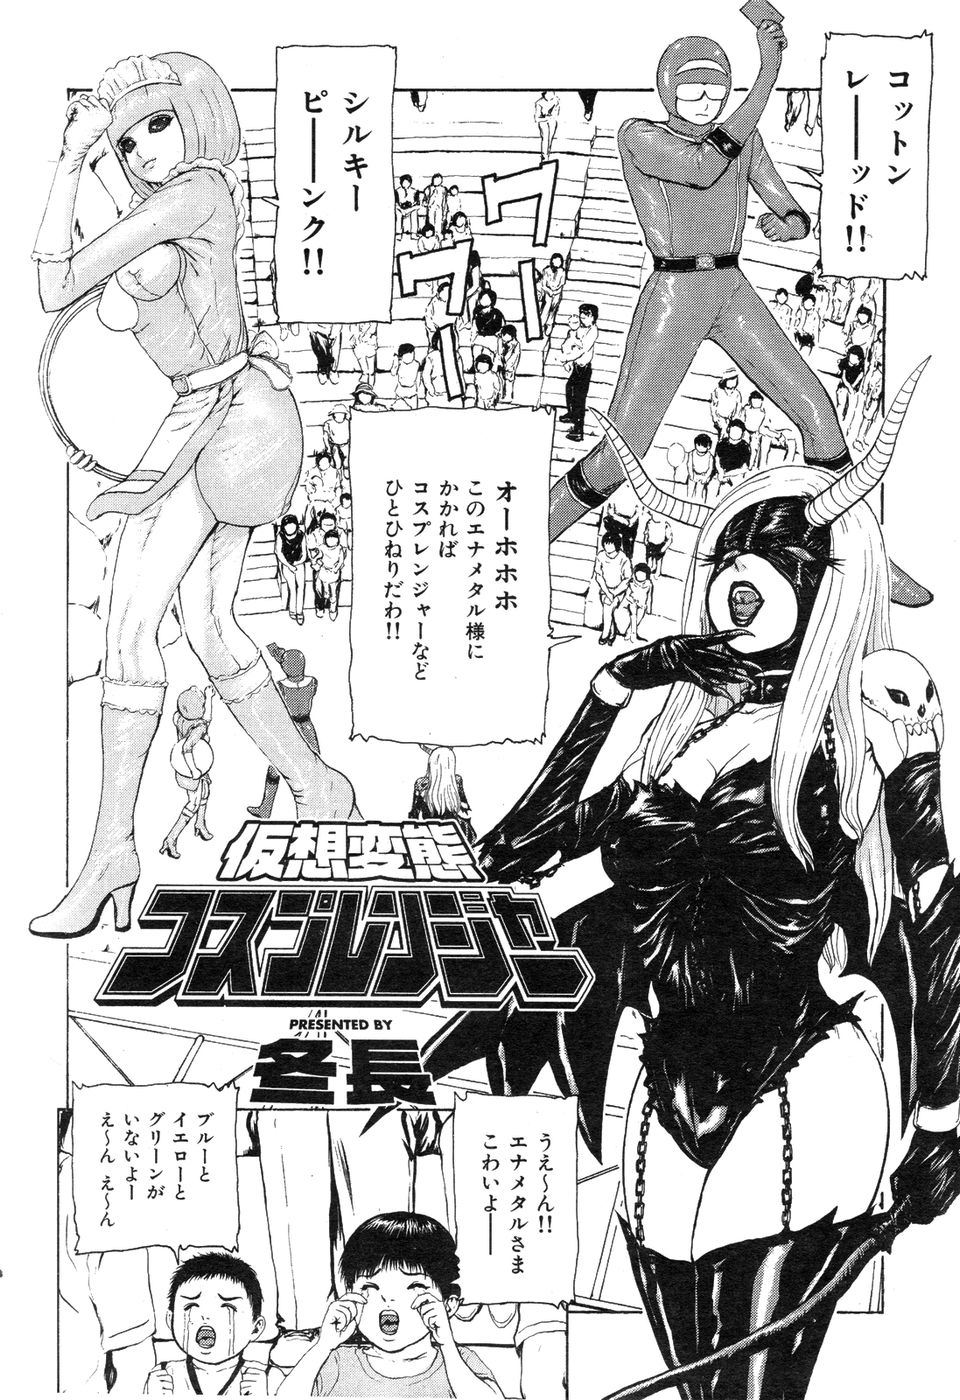 COMIC Hana-Man vol.11 [2006] COMIC 華漫 vol.11 [2006]